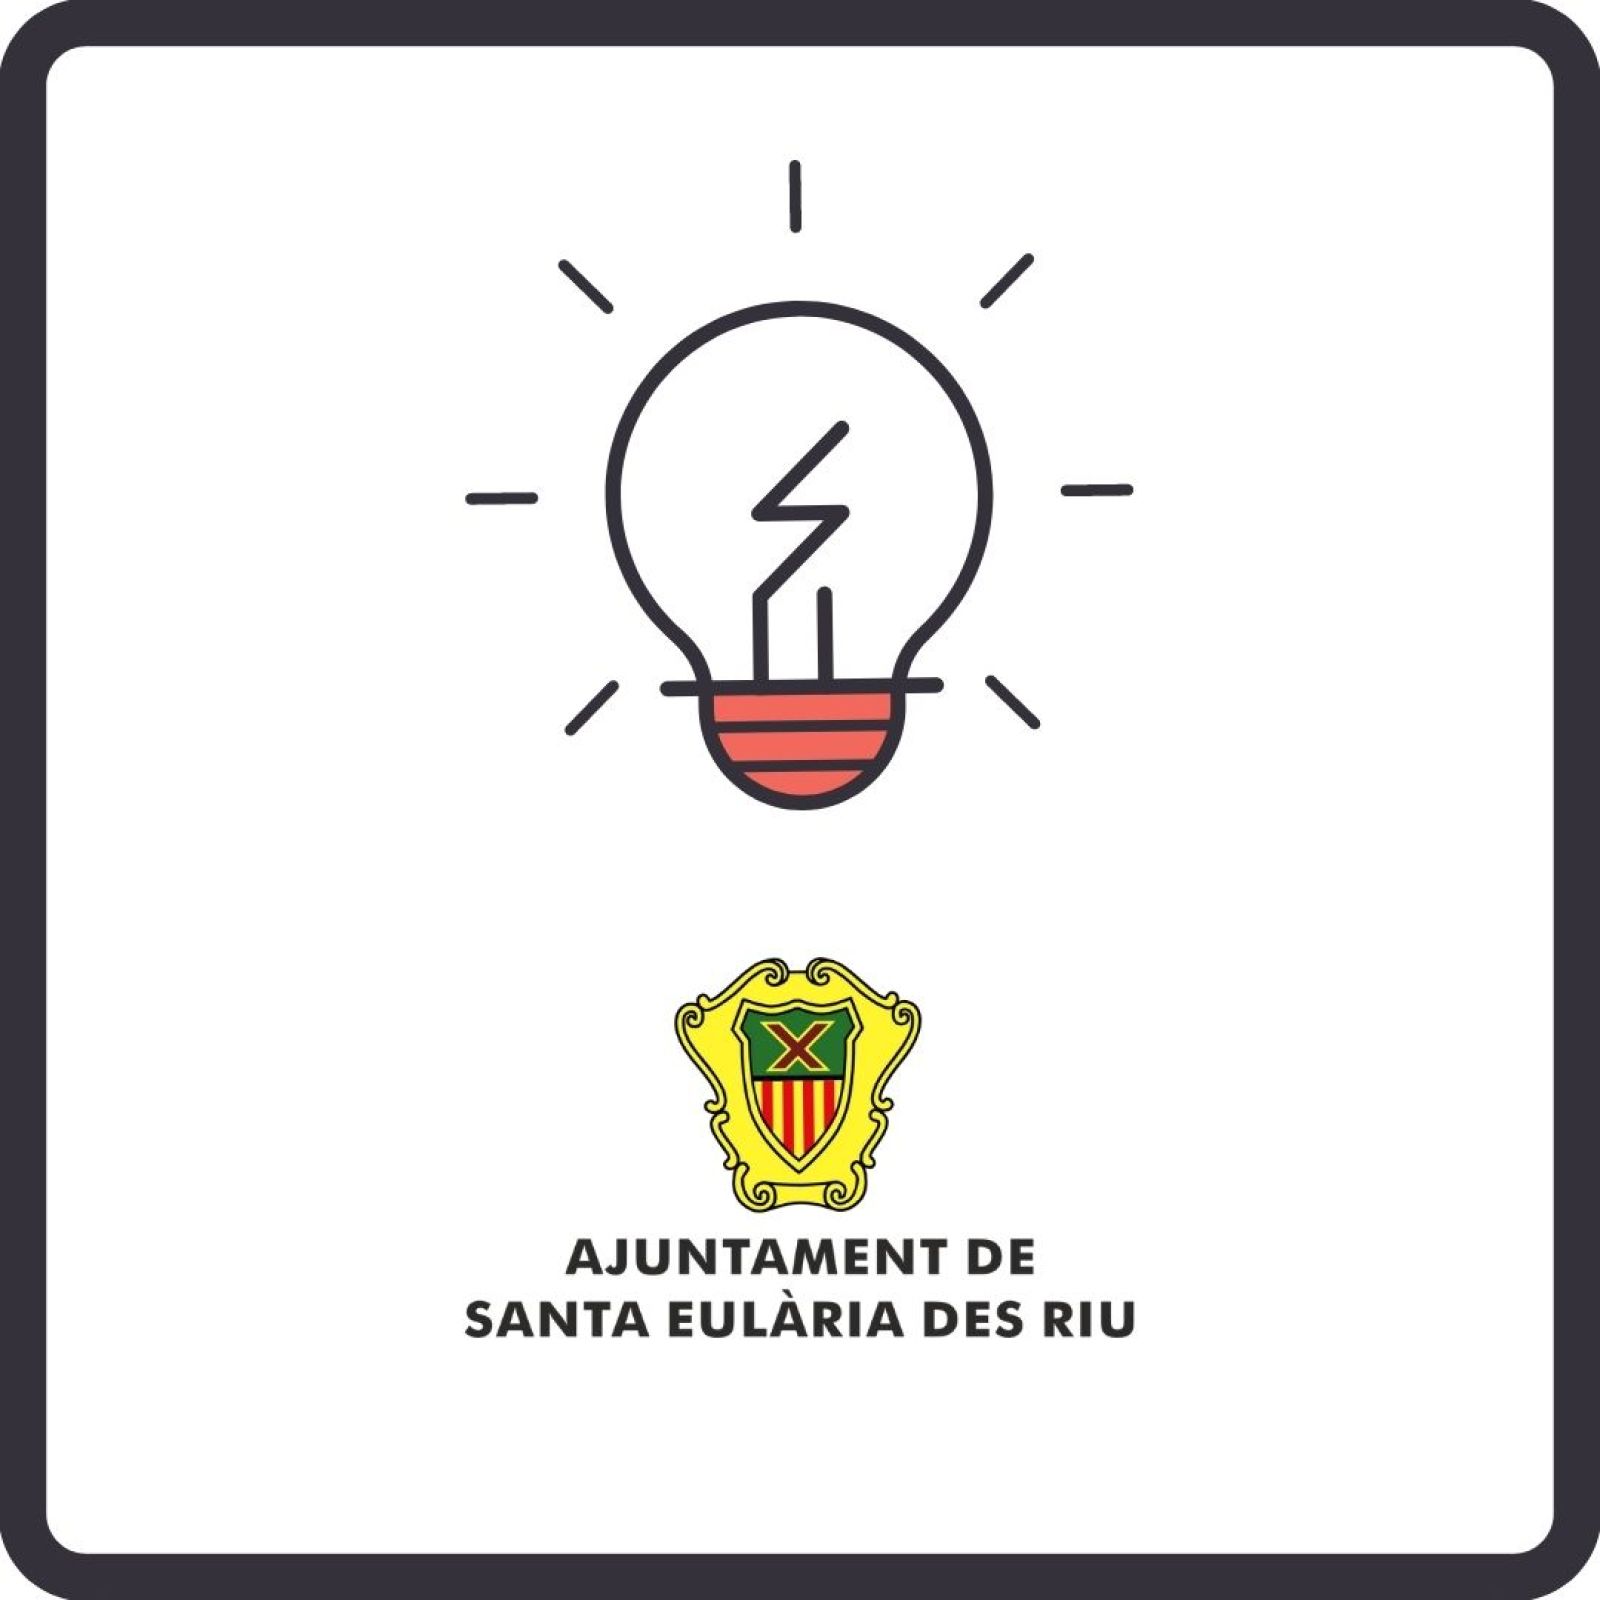 Corte temporal del suministro de energía eléctrica en diferentes zonas de Santa Eulària des Riu el día 1 de julio